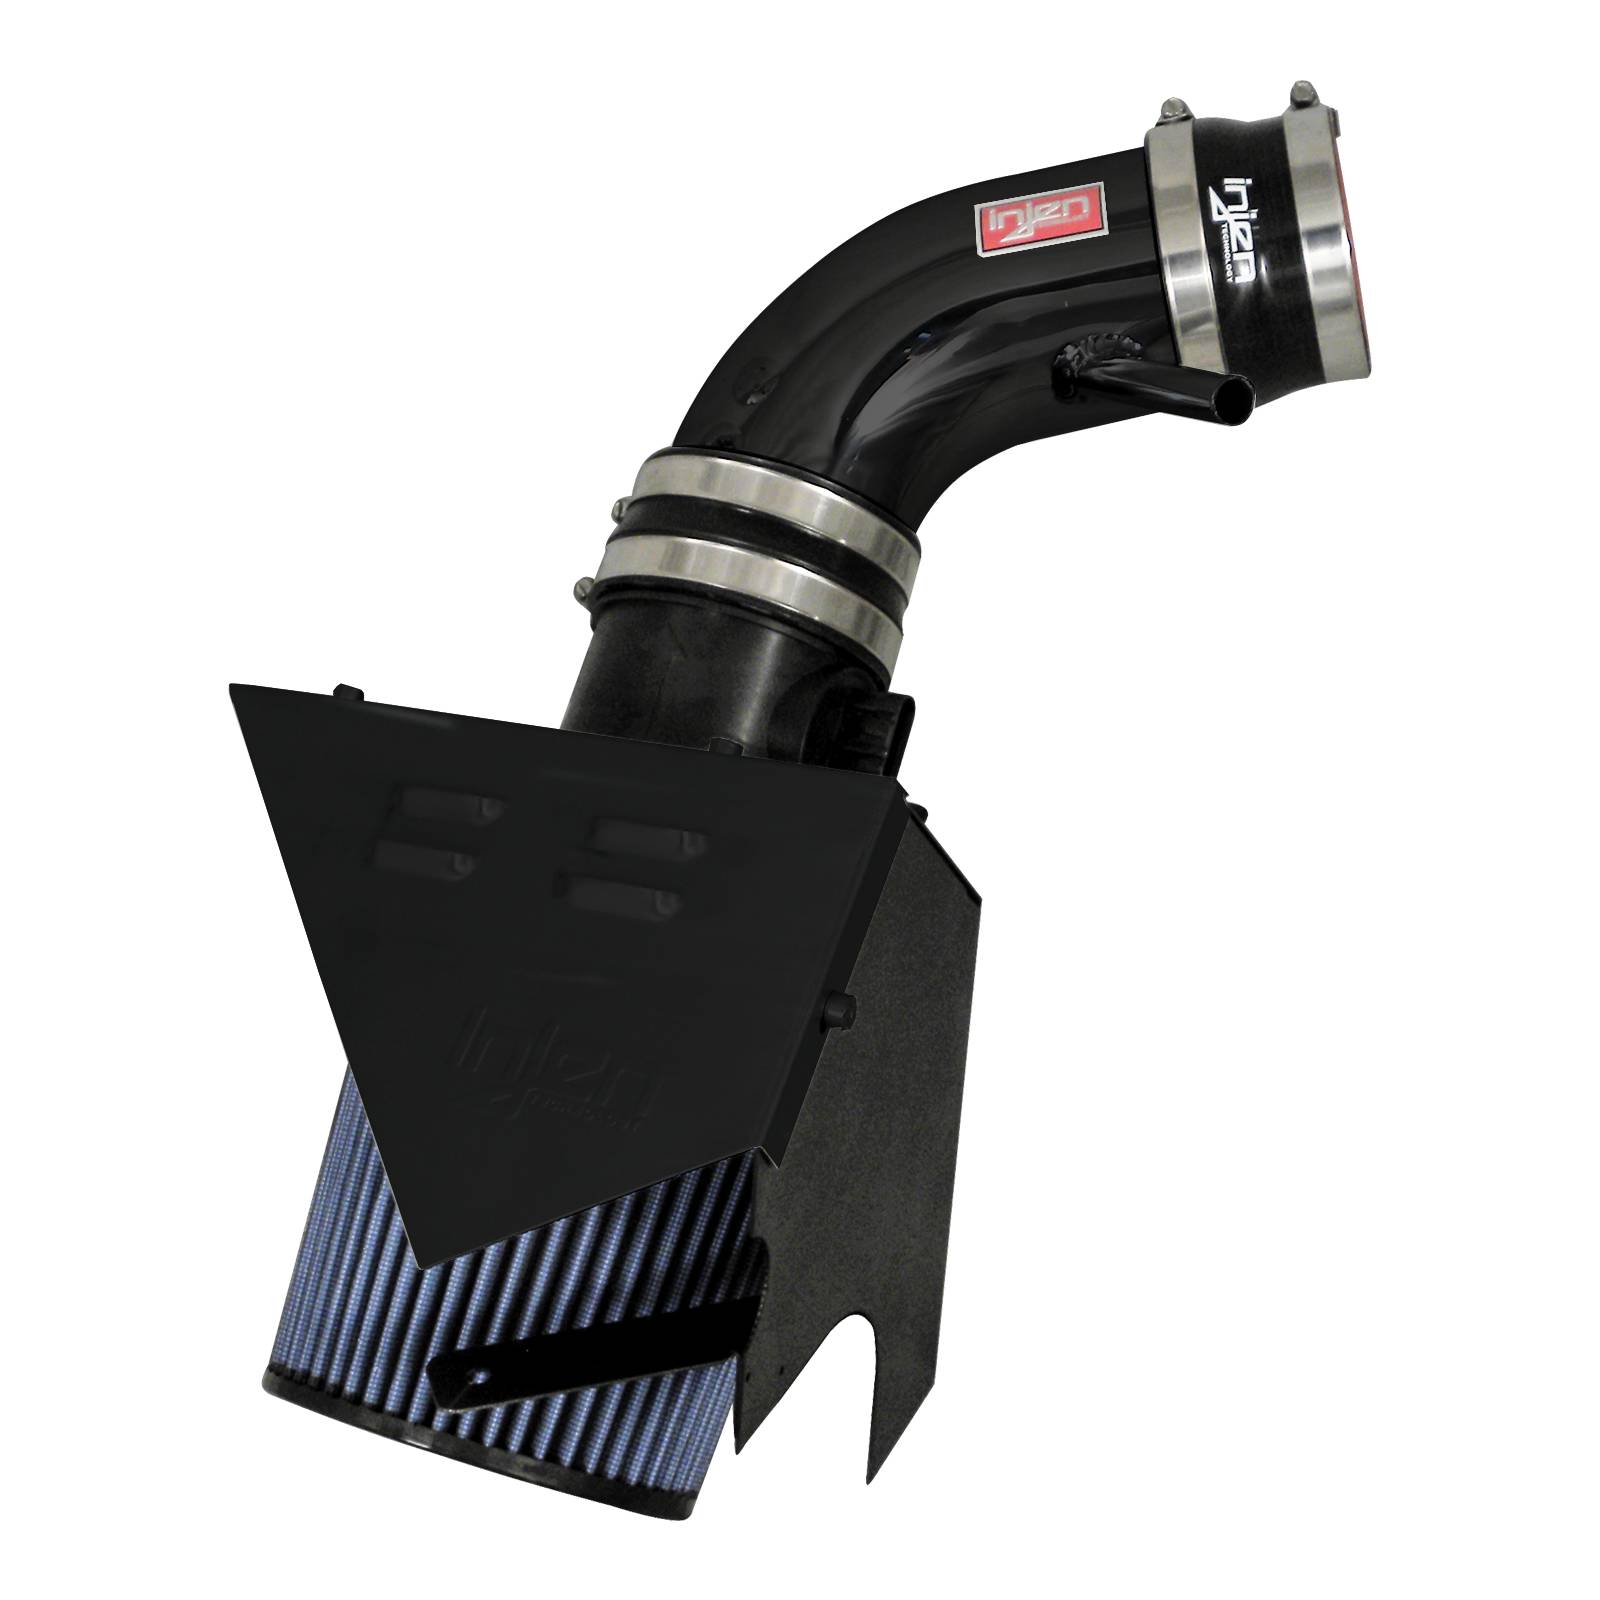 Injen Sp Short Ram Cold Air Intake System - Black (+10 Hp & +9 Lb-Ft)